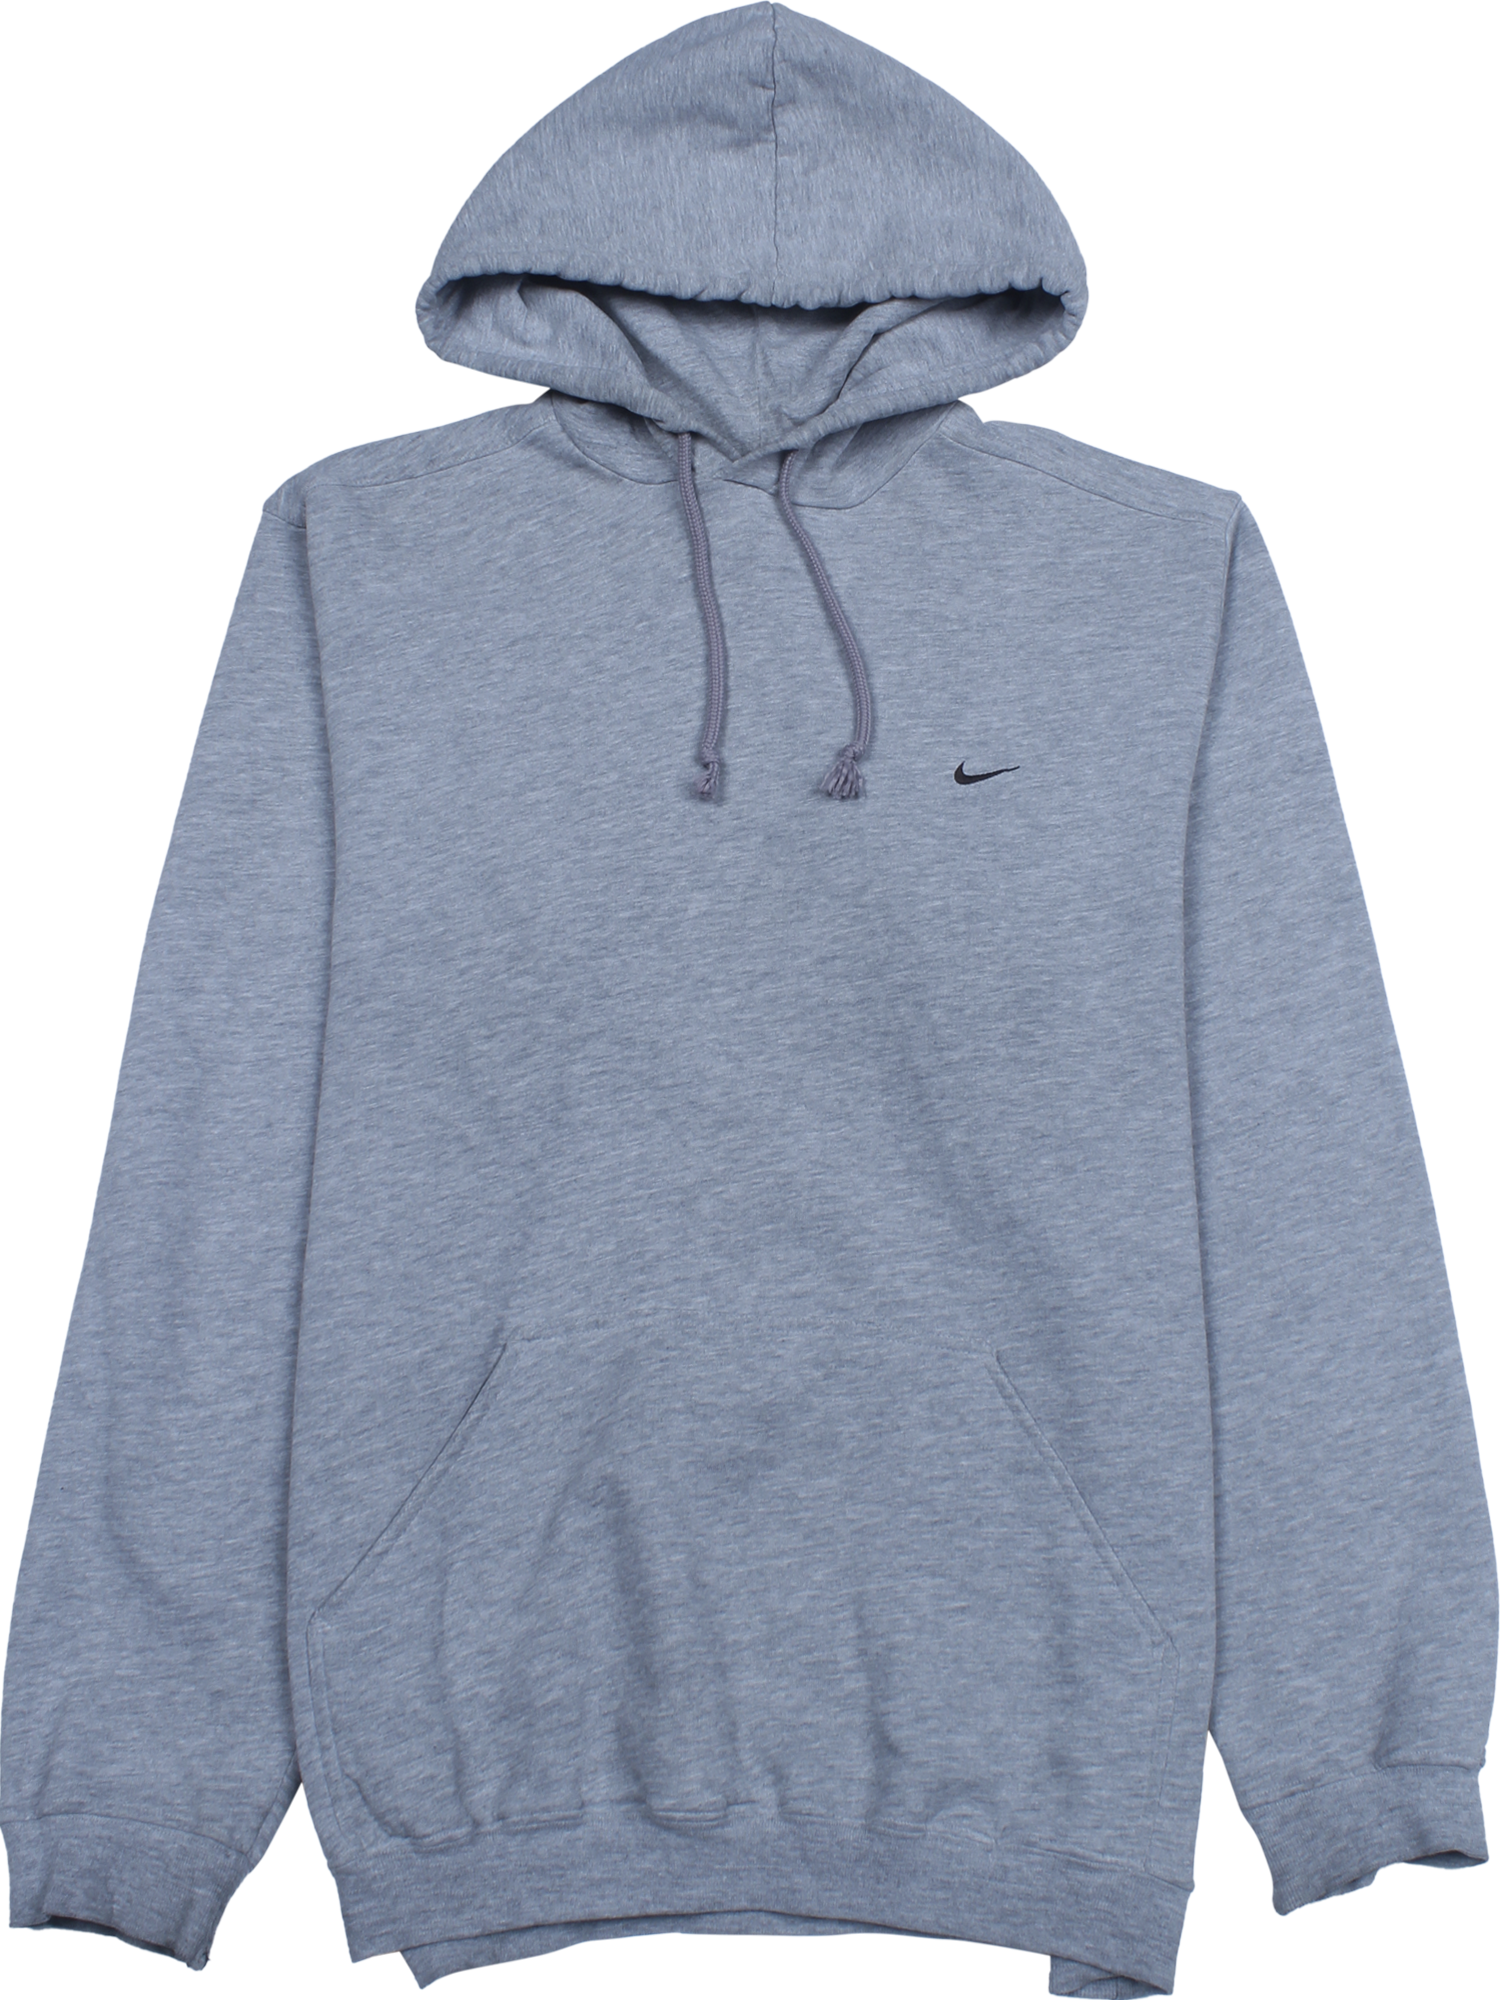 Nike Kapuzen Pullover grau